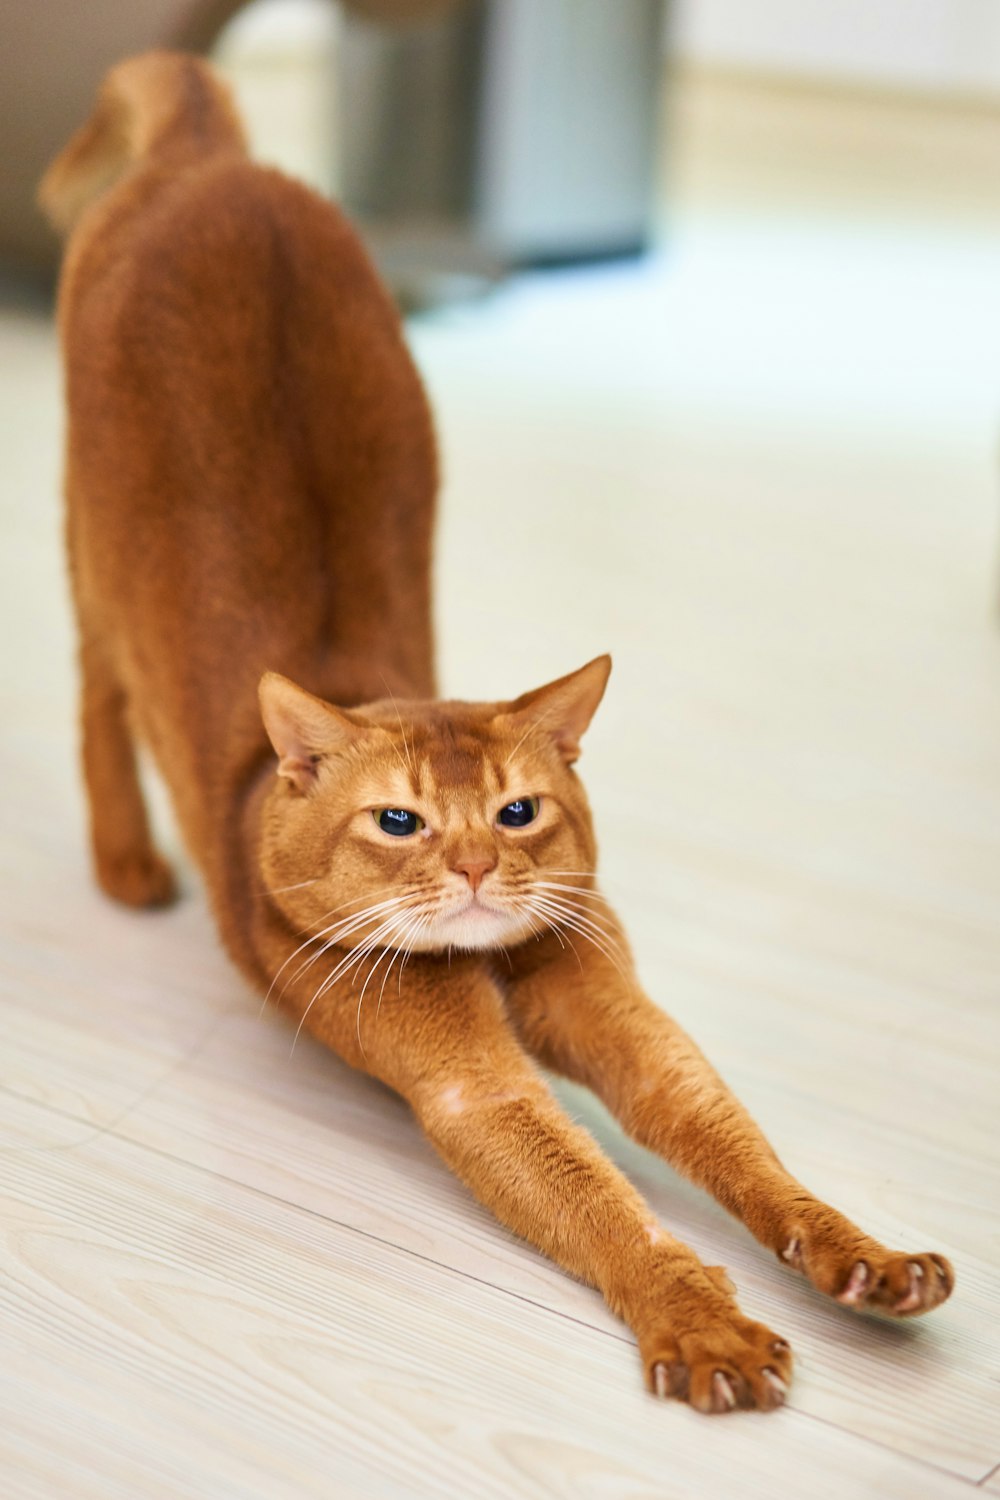 gato naranja que se estira sobre una superficie blanca